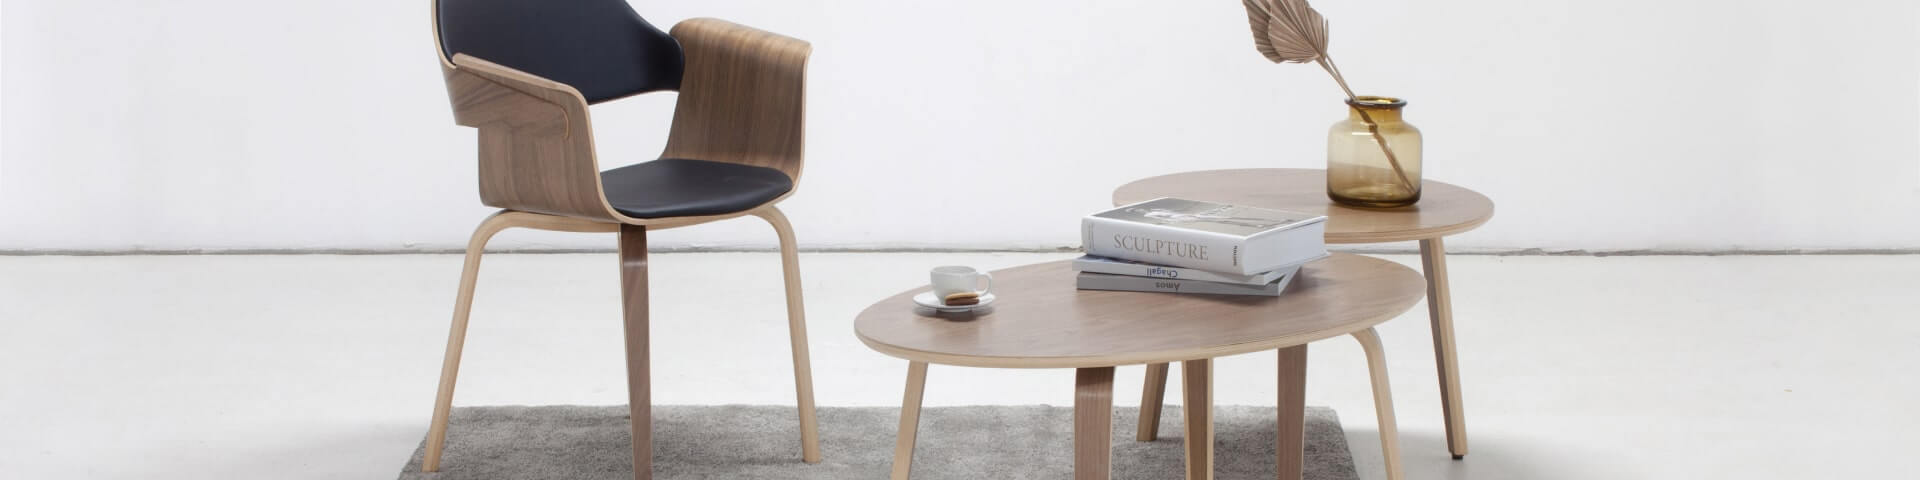 Egy skandináv tölgy körasztal két székkel, amelyek stílusos és meghitt étkezőteret teremtenek.